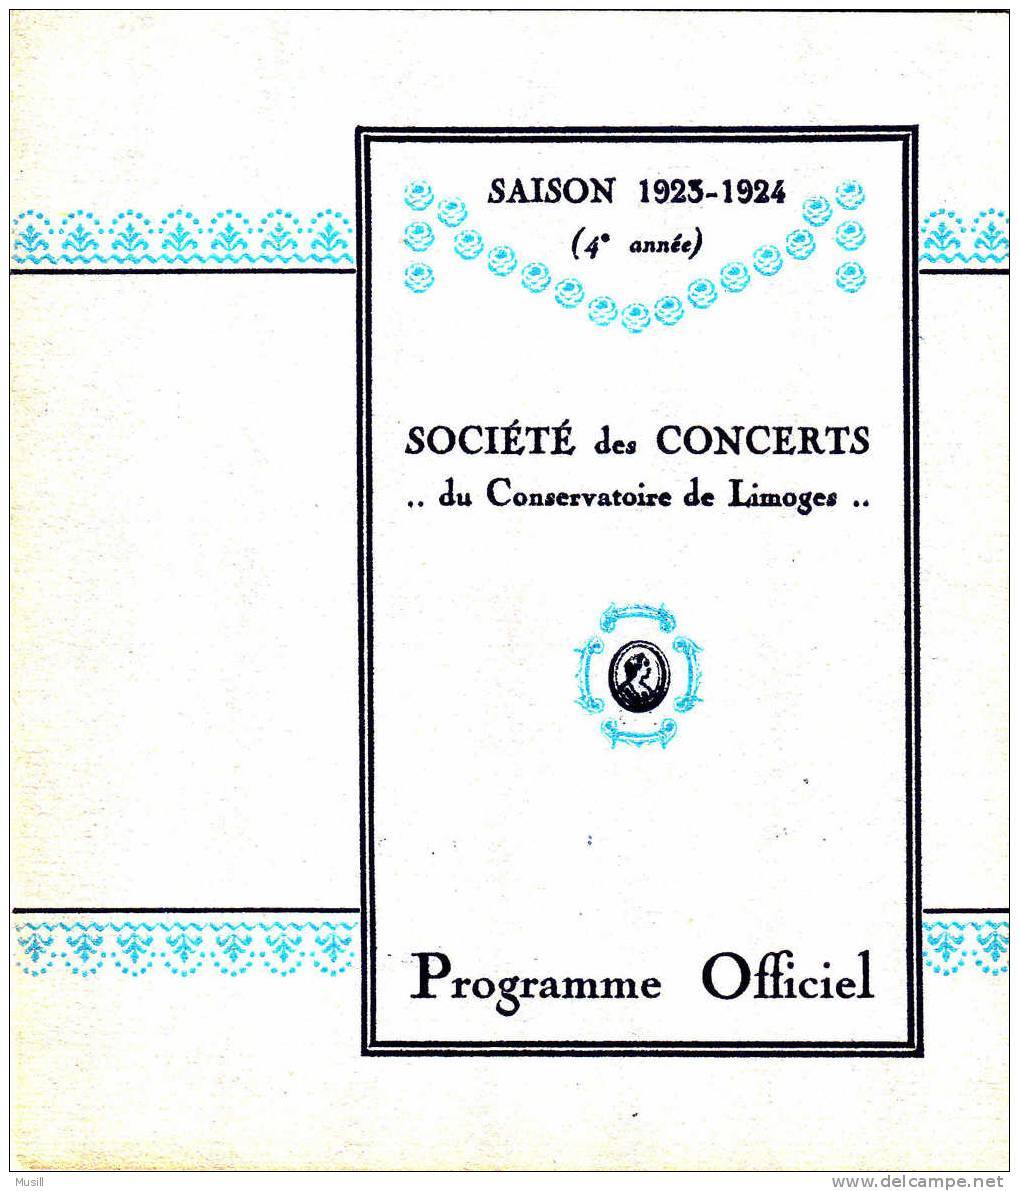 Programme De La Société Des Concerts Du Conservatoire De Limoges. Saison 1923-1924 - Programmes